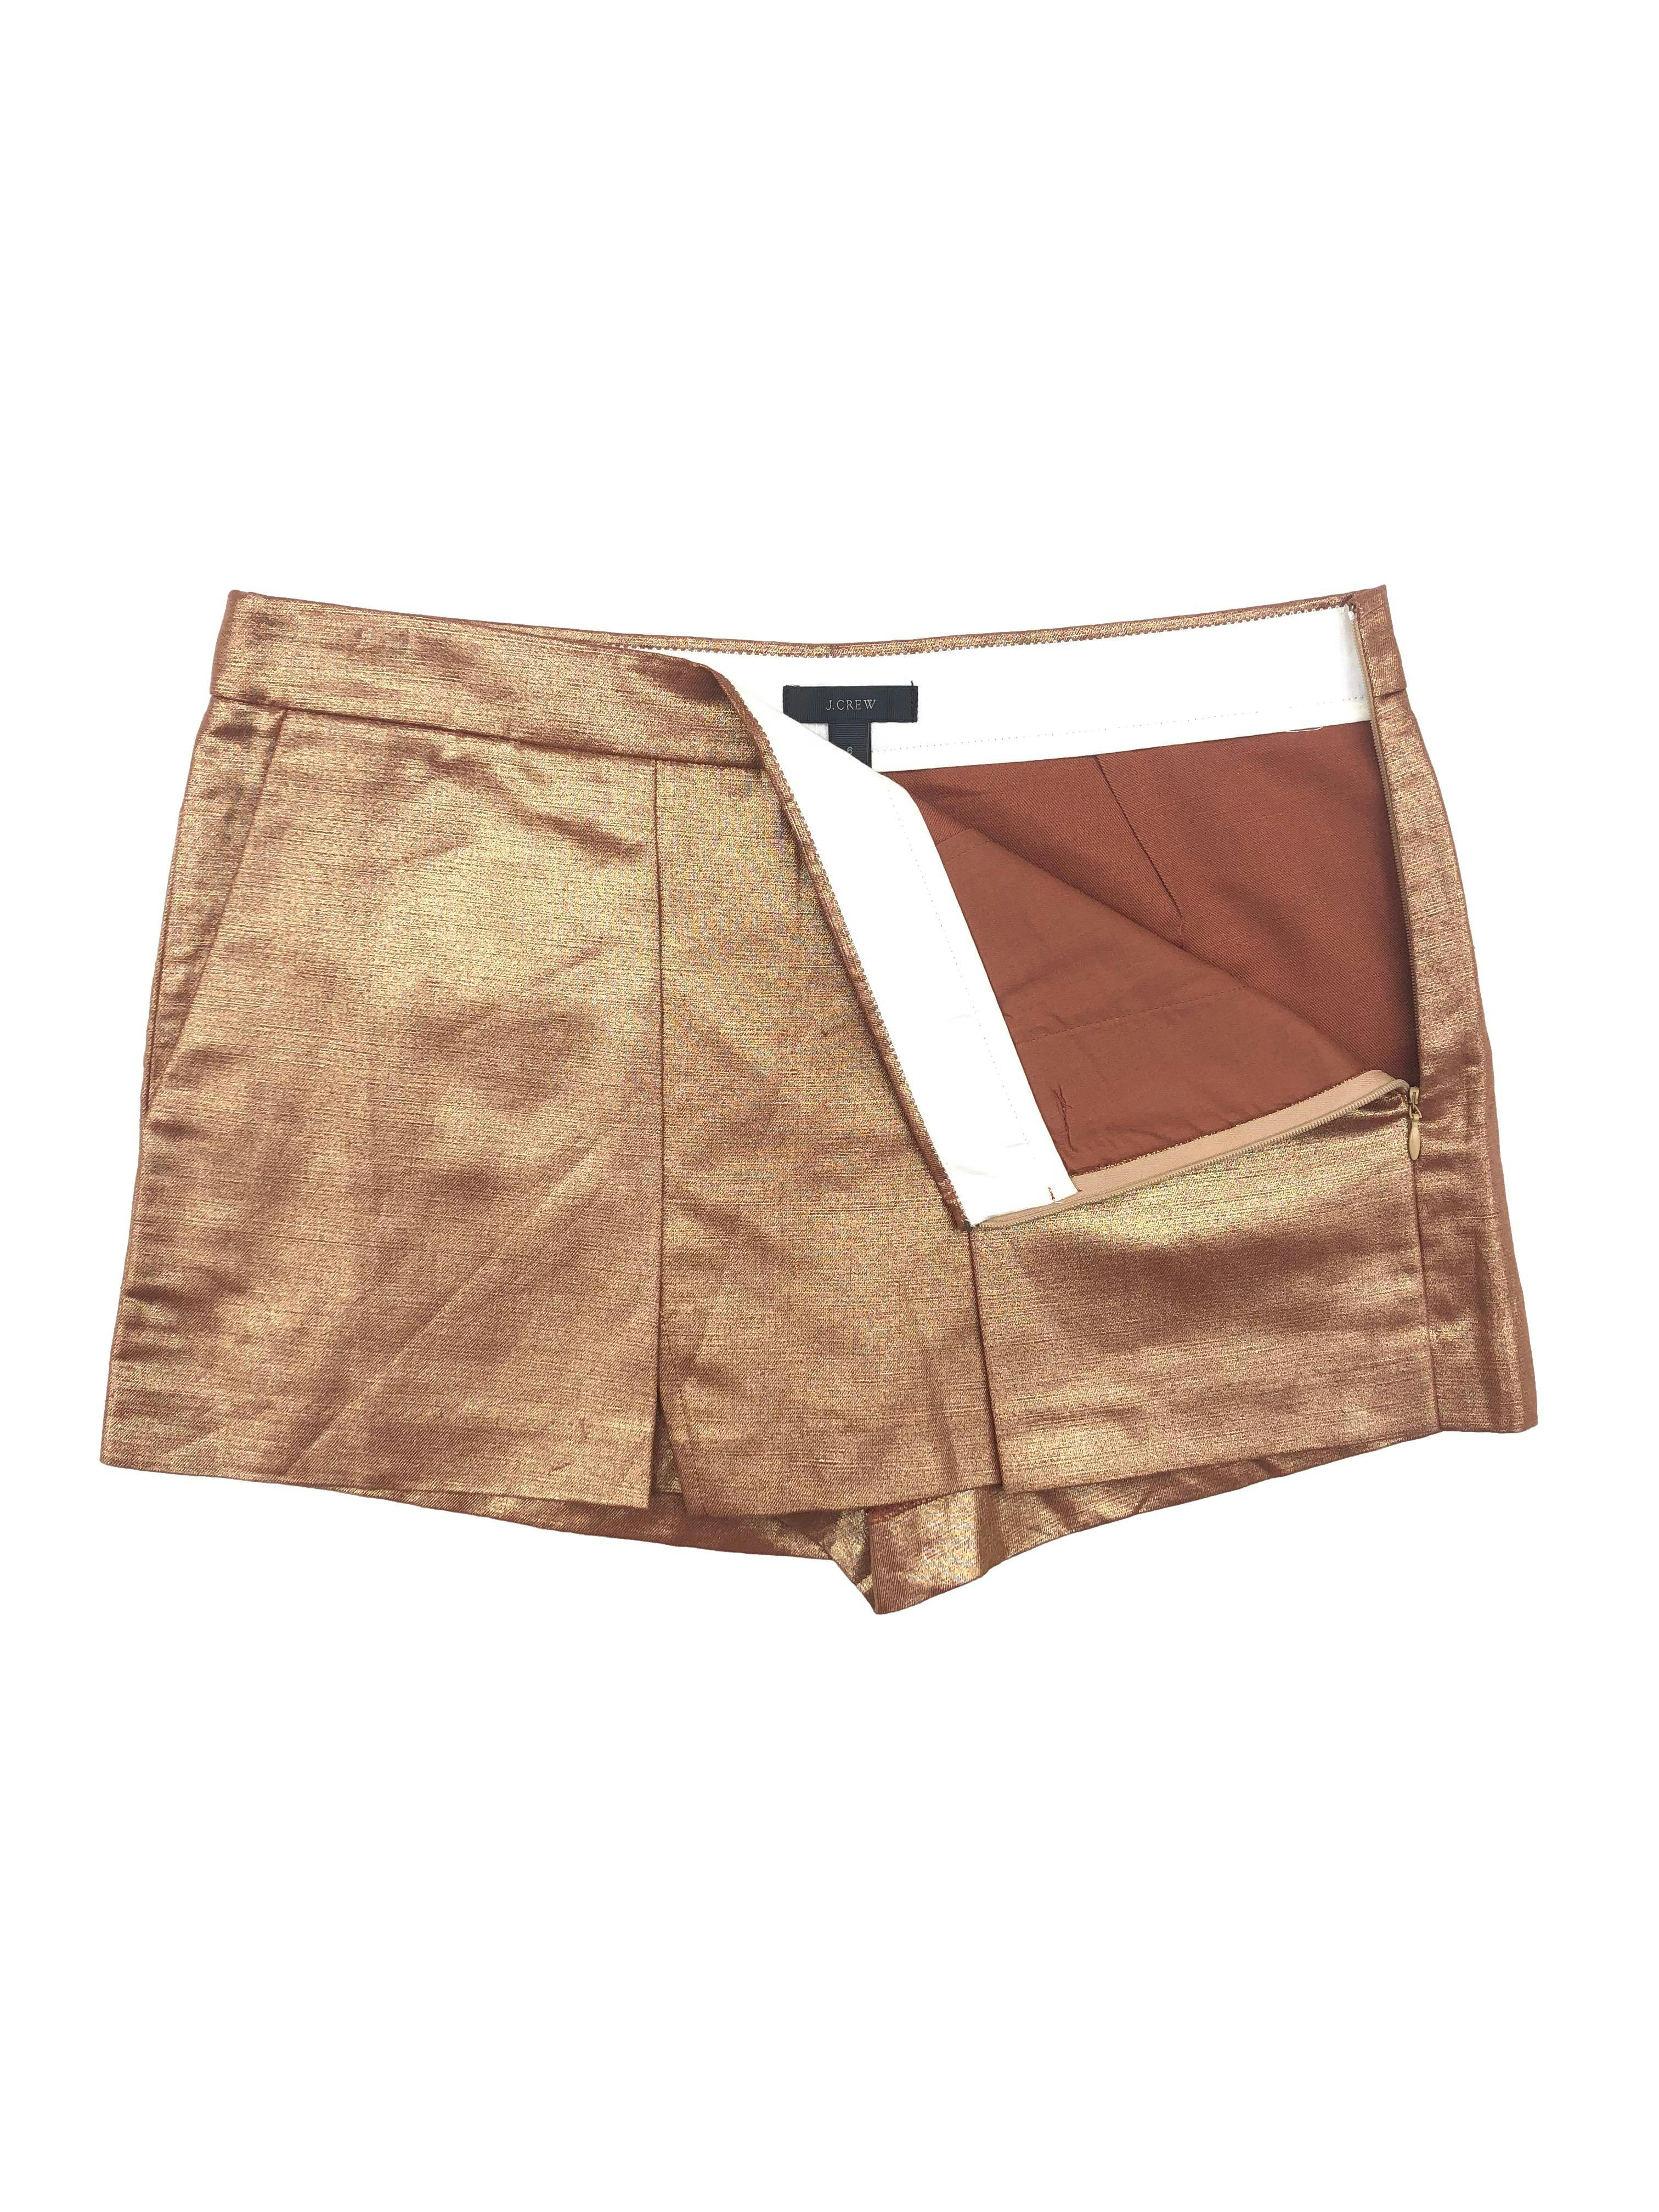 Falda short J.Crew bronce metalizado, mezcla de lino y algodón, con bolsillos laterales y cierre invisible. Cintura: 80cm, Tiro: 26cm, Largo: 32cm. Precio original: 450